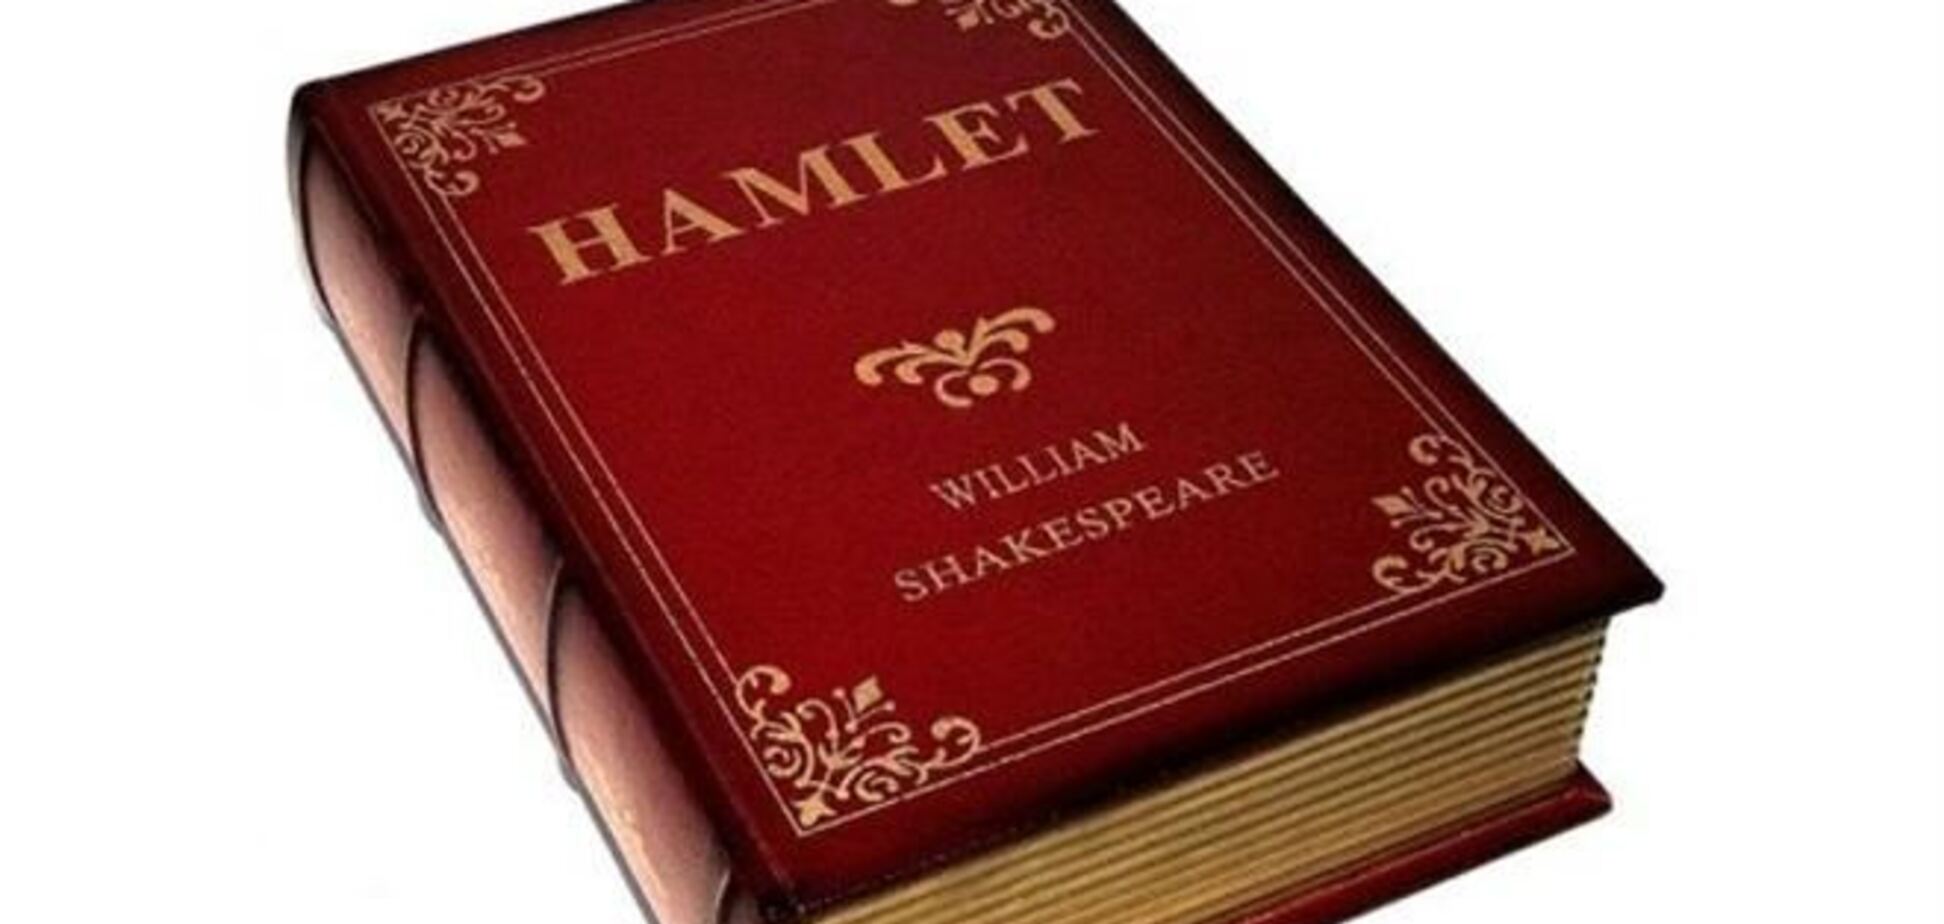 Кожен шостий британець не знає автора 'Гамлета'